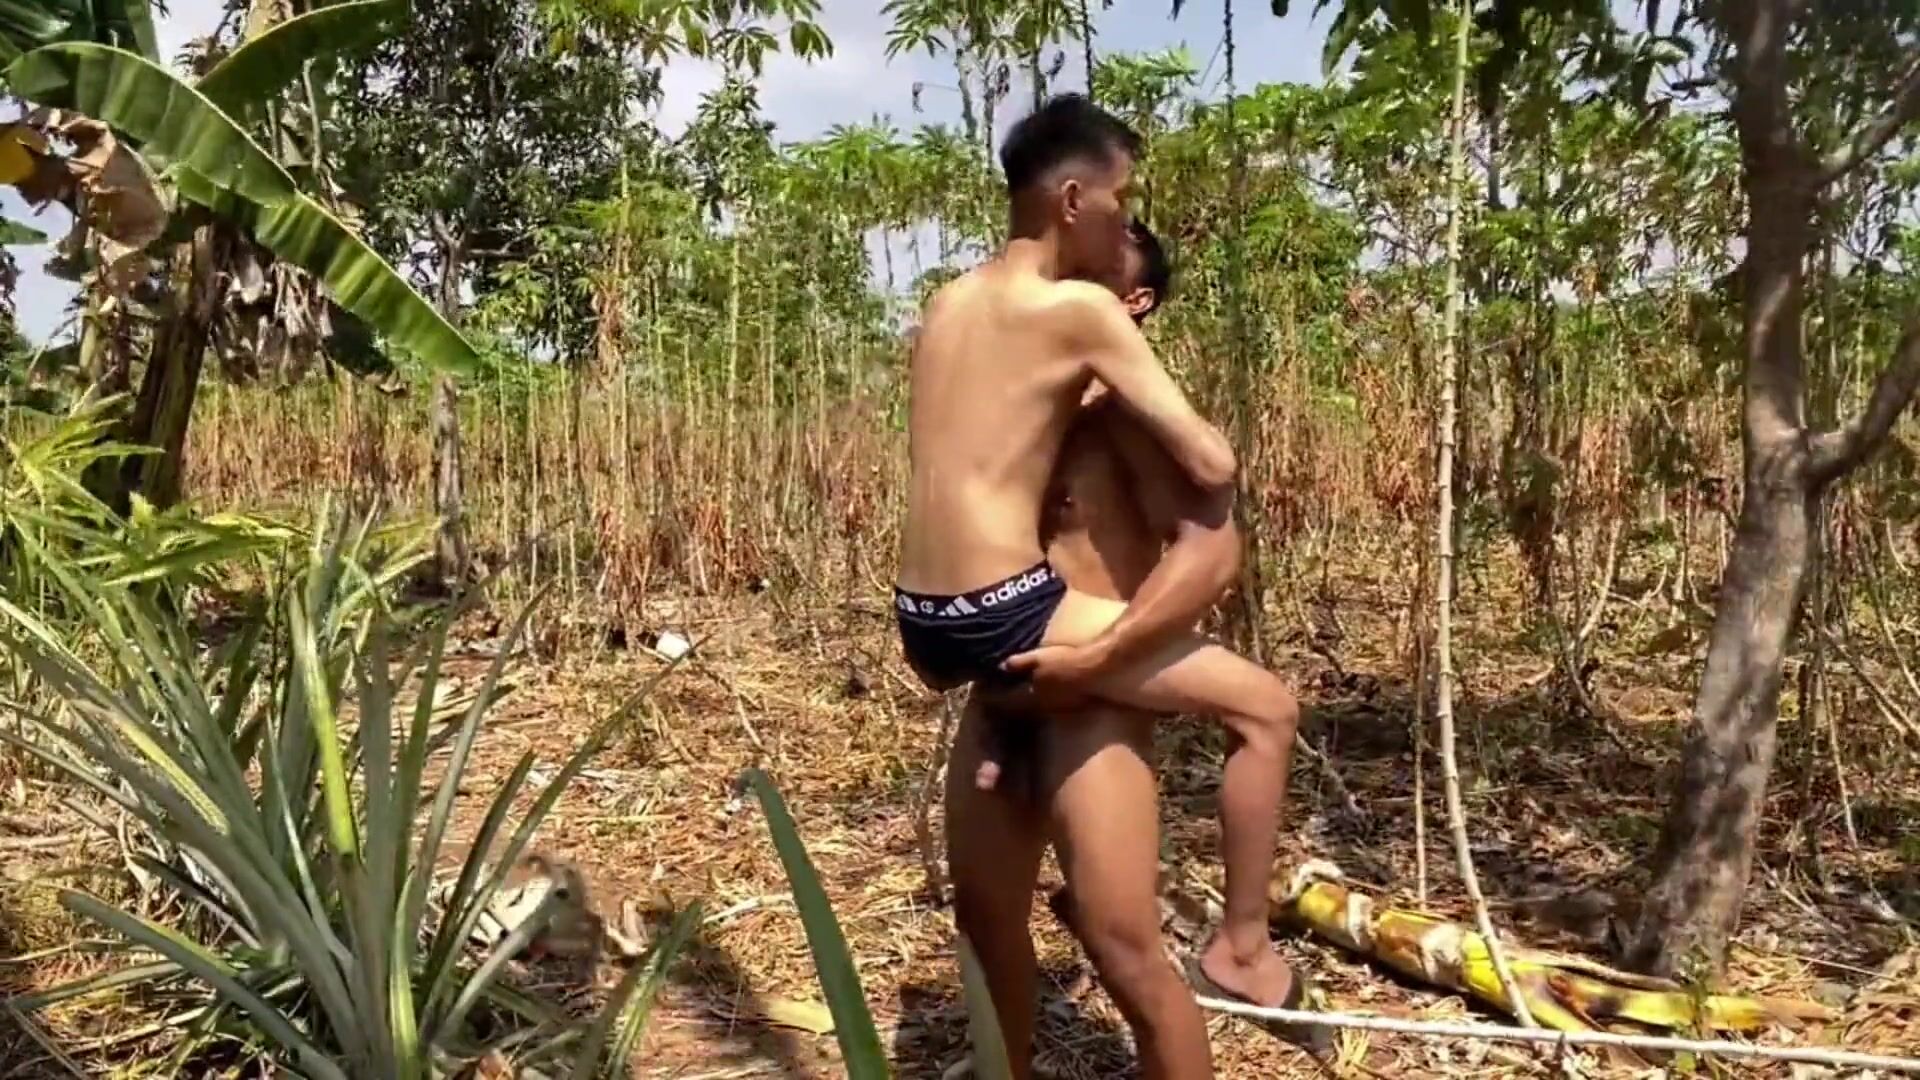 Парень тайский мускулистый красавчик трахается неопытные твинки банановый  куст на открытом воздухе - femboyevj - гей секс смотреть онлайн